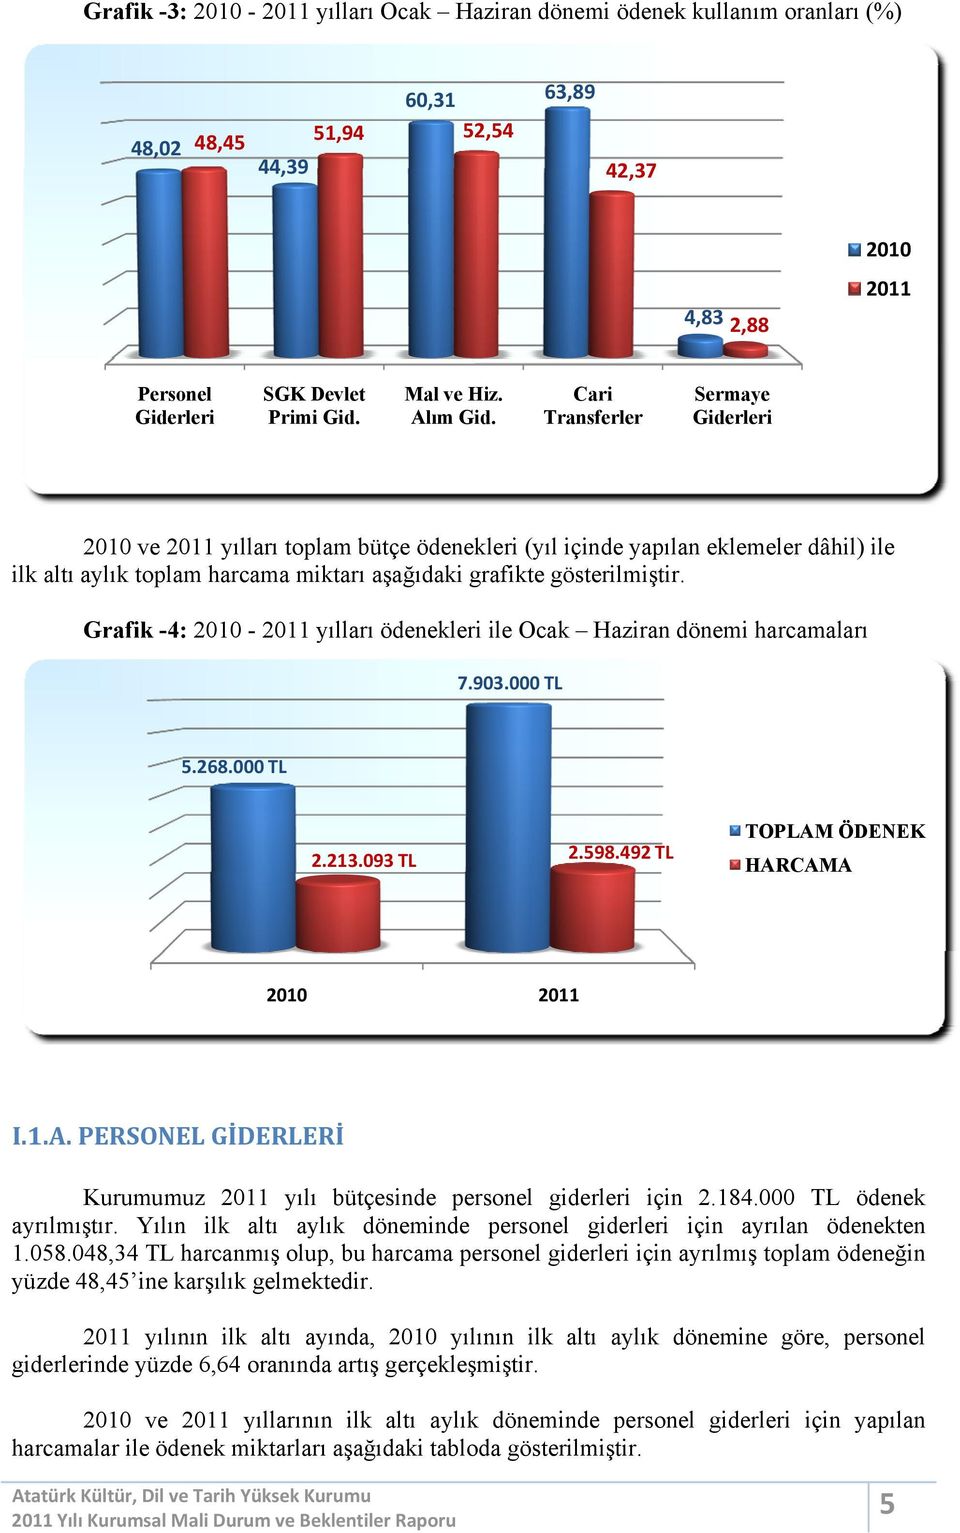 Grafik -4: 2010-2011 yılları ödenekleri ile Ocak dönemi harcamaları 7.903.000TL 5.268.000TL TOPLAM ÖDENEK 2.213.093TL 2010 2.598.492TL HARCAMA 2011 I.1.A.PERSONELGİDERLERİ Kurumumuz 2011 yılı bütçesinde personel giderleri için 2.